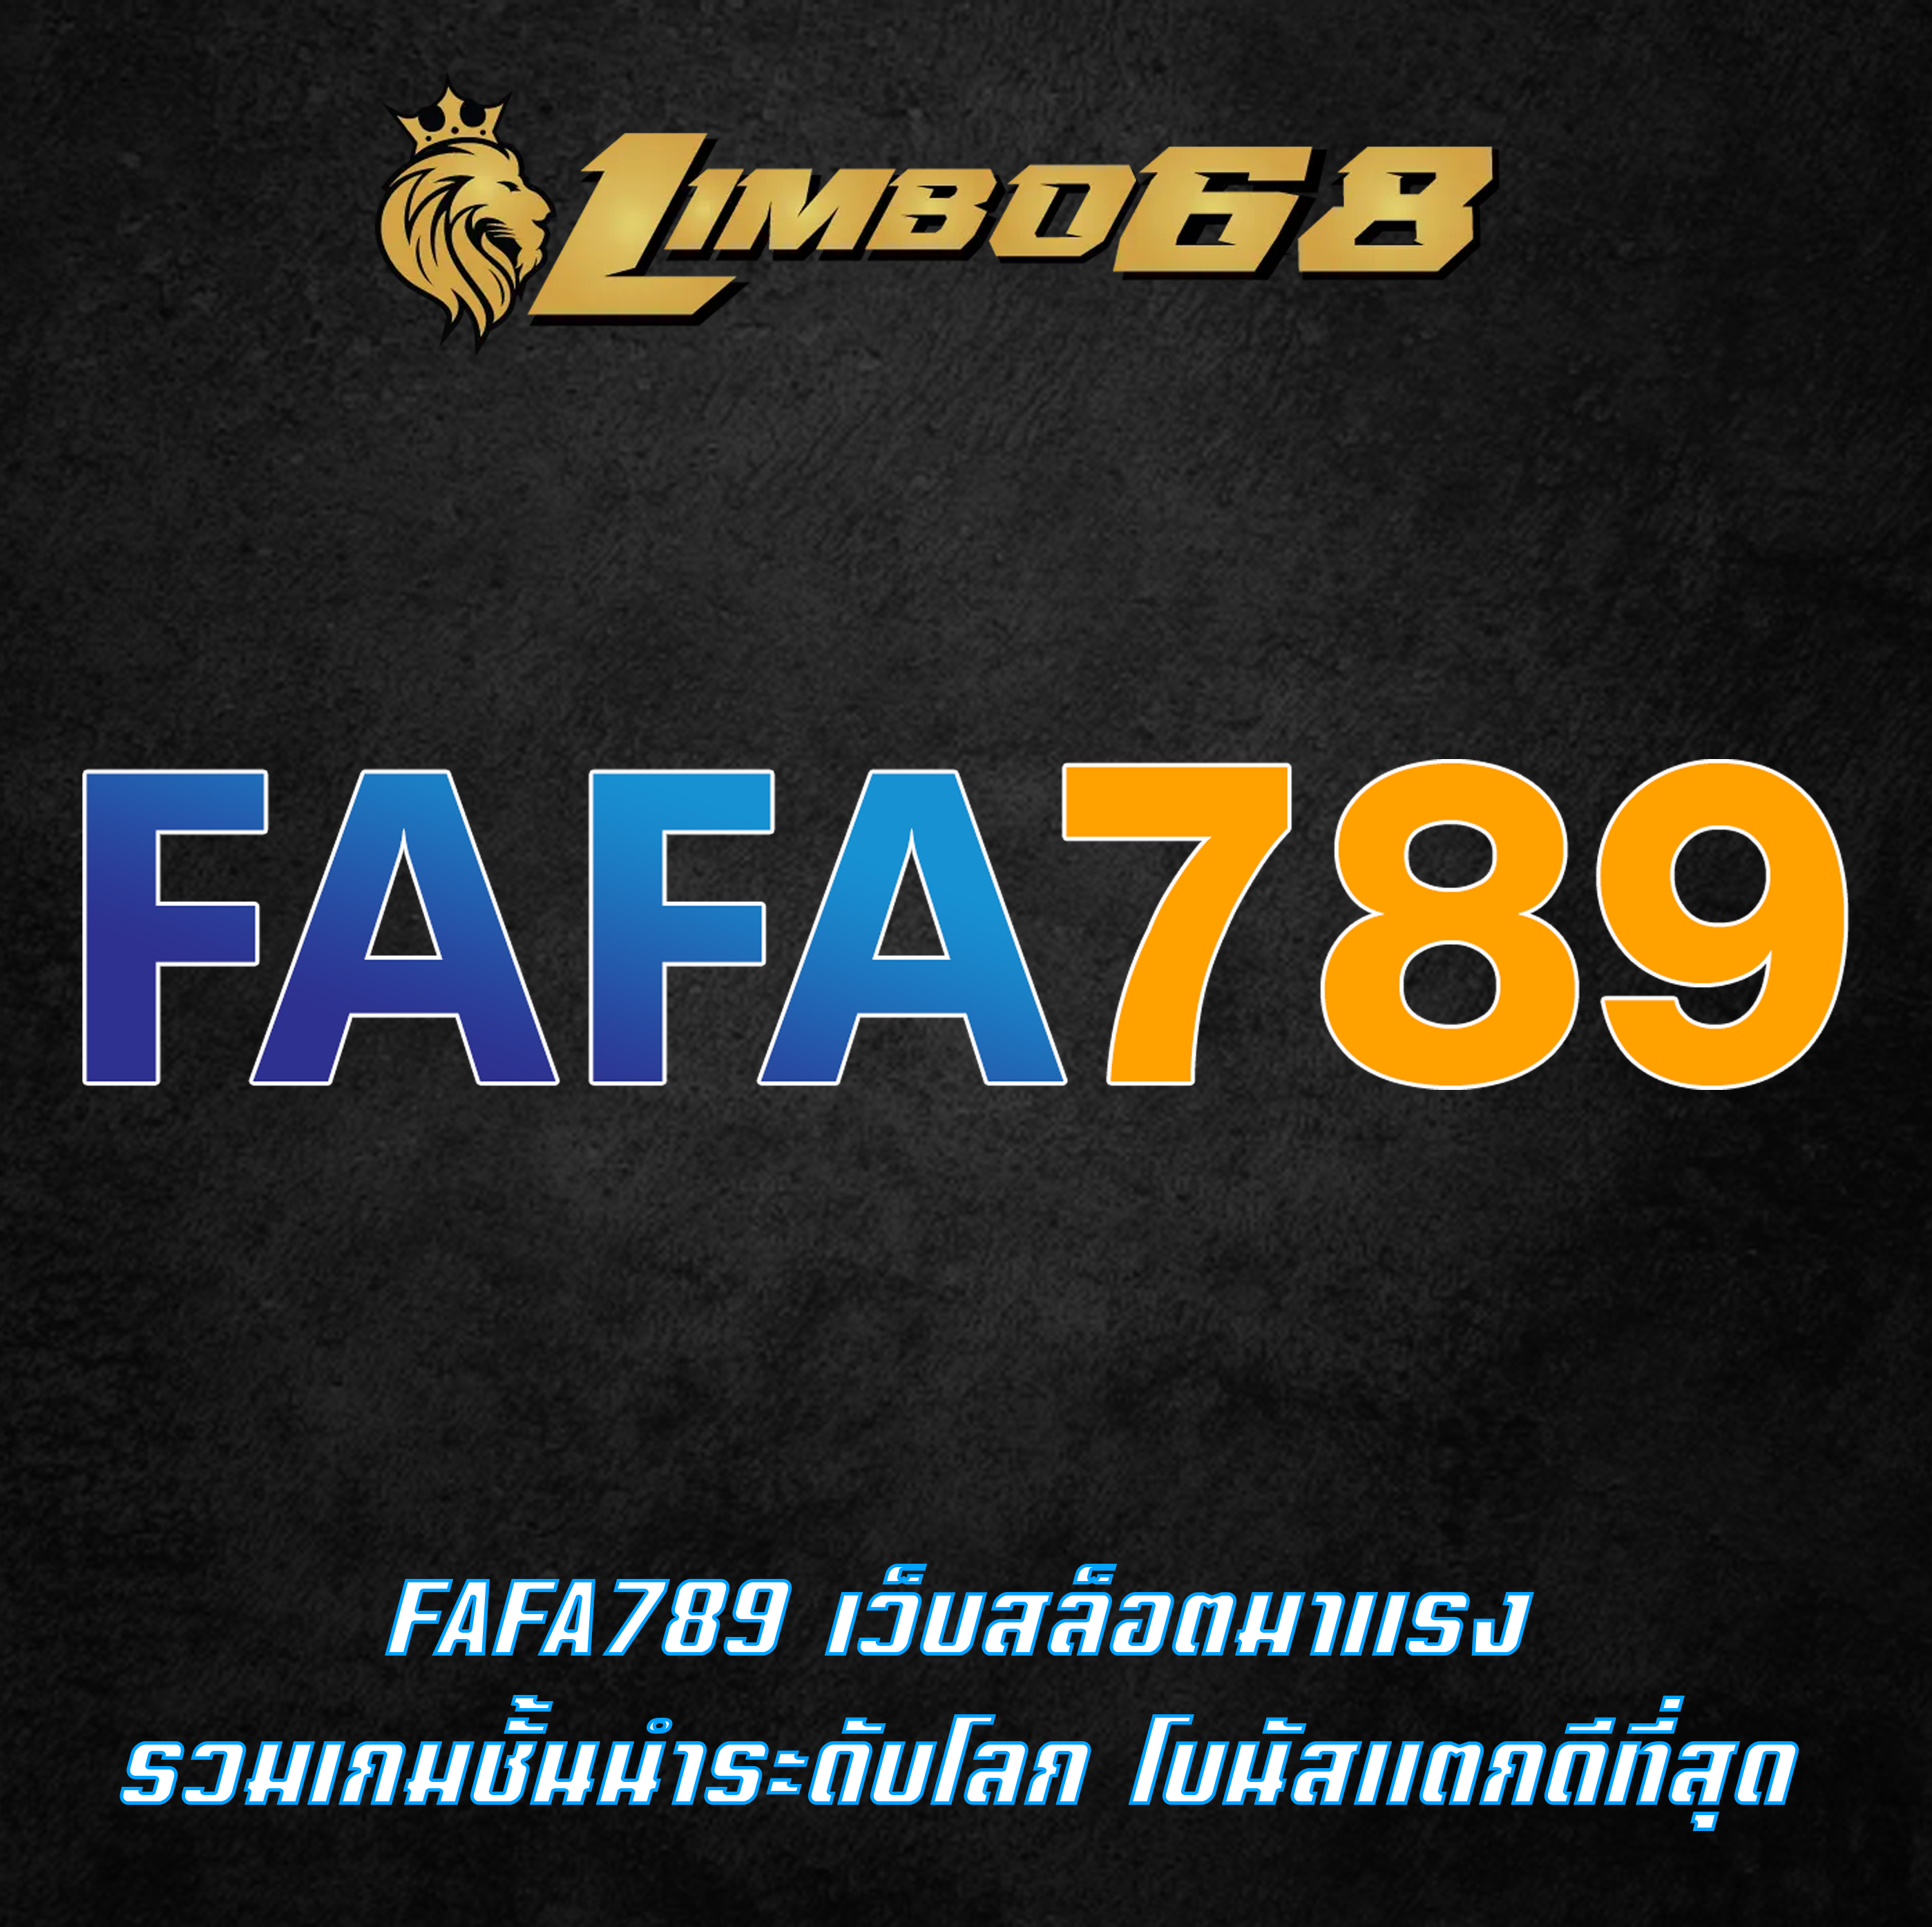 FAFA789 เว็บสล็อตมาแรง รวมเกมชั้นนำระดับโลก โบนัสแตกดีที่สุด